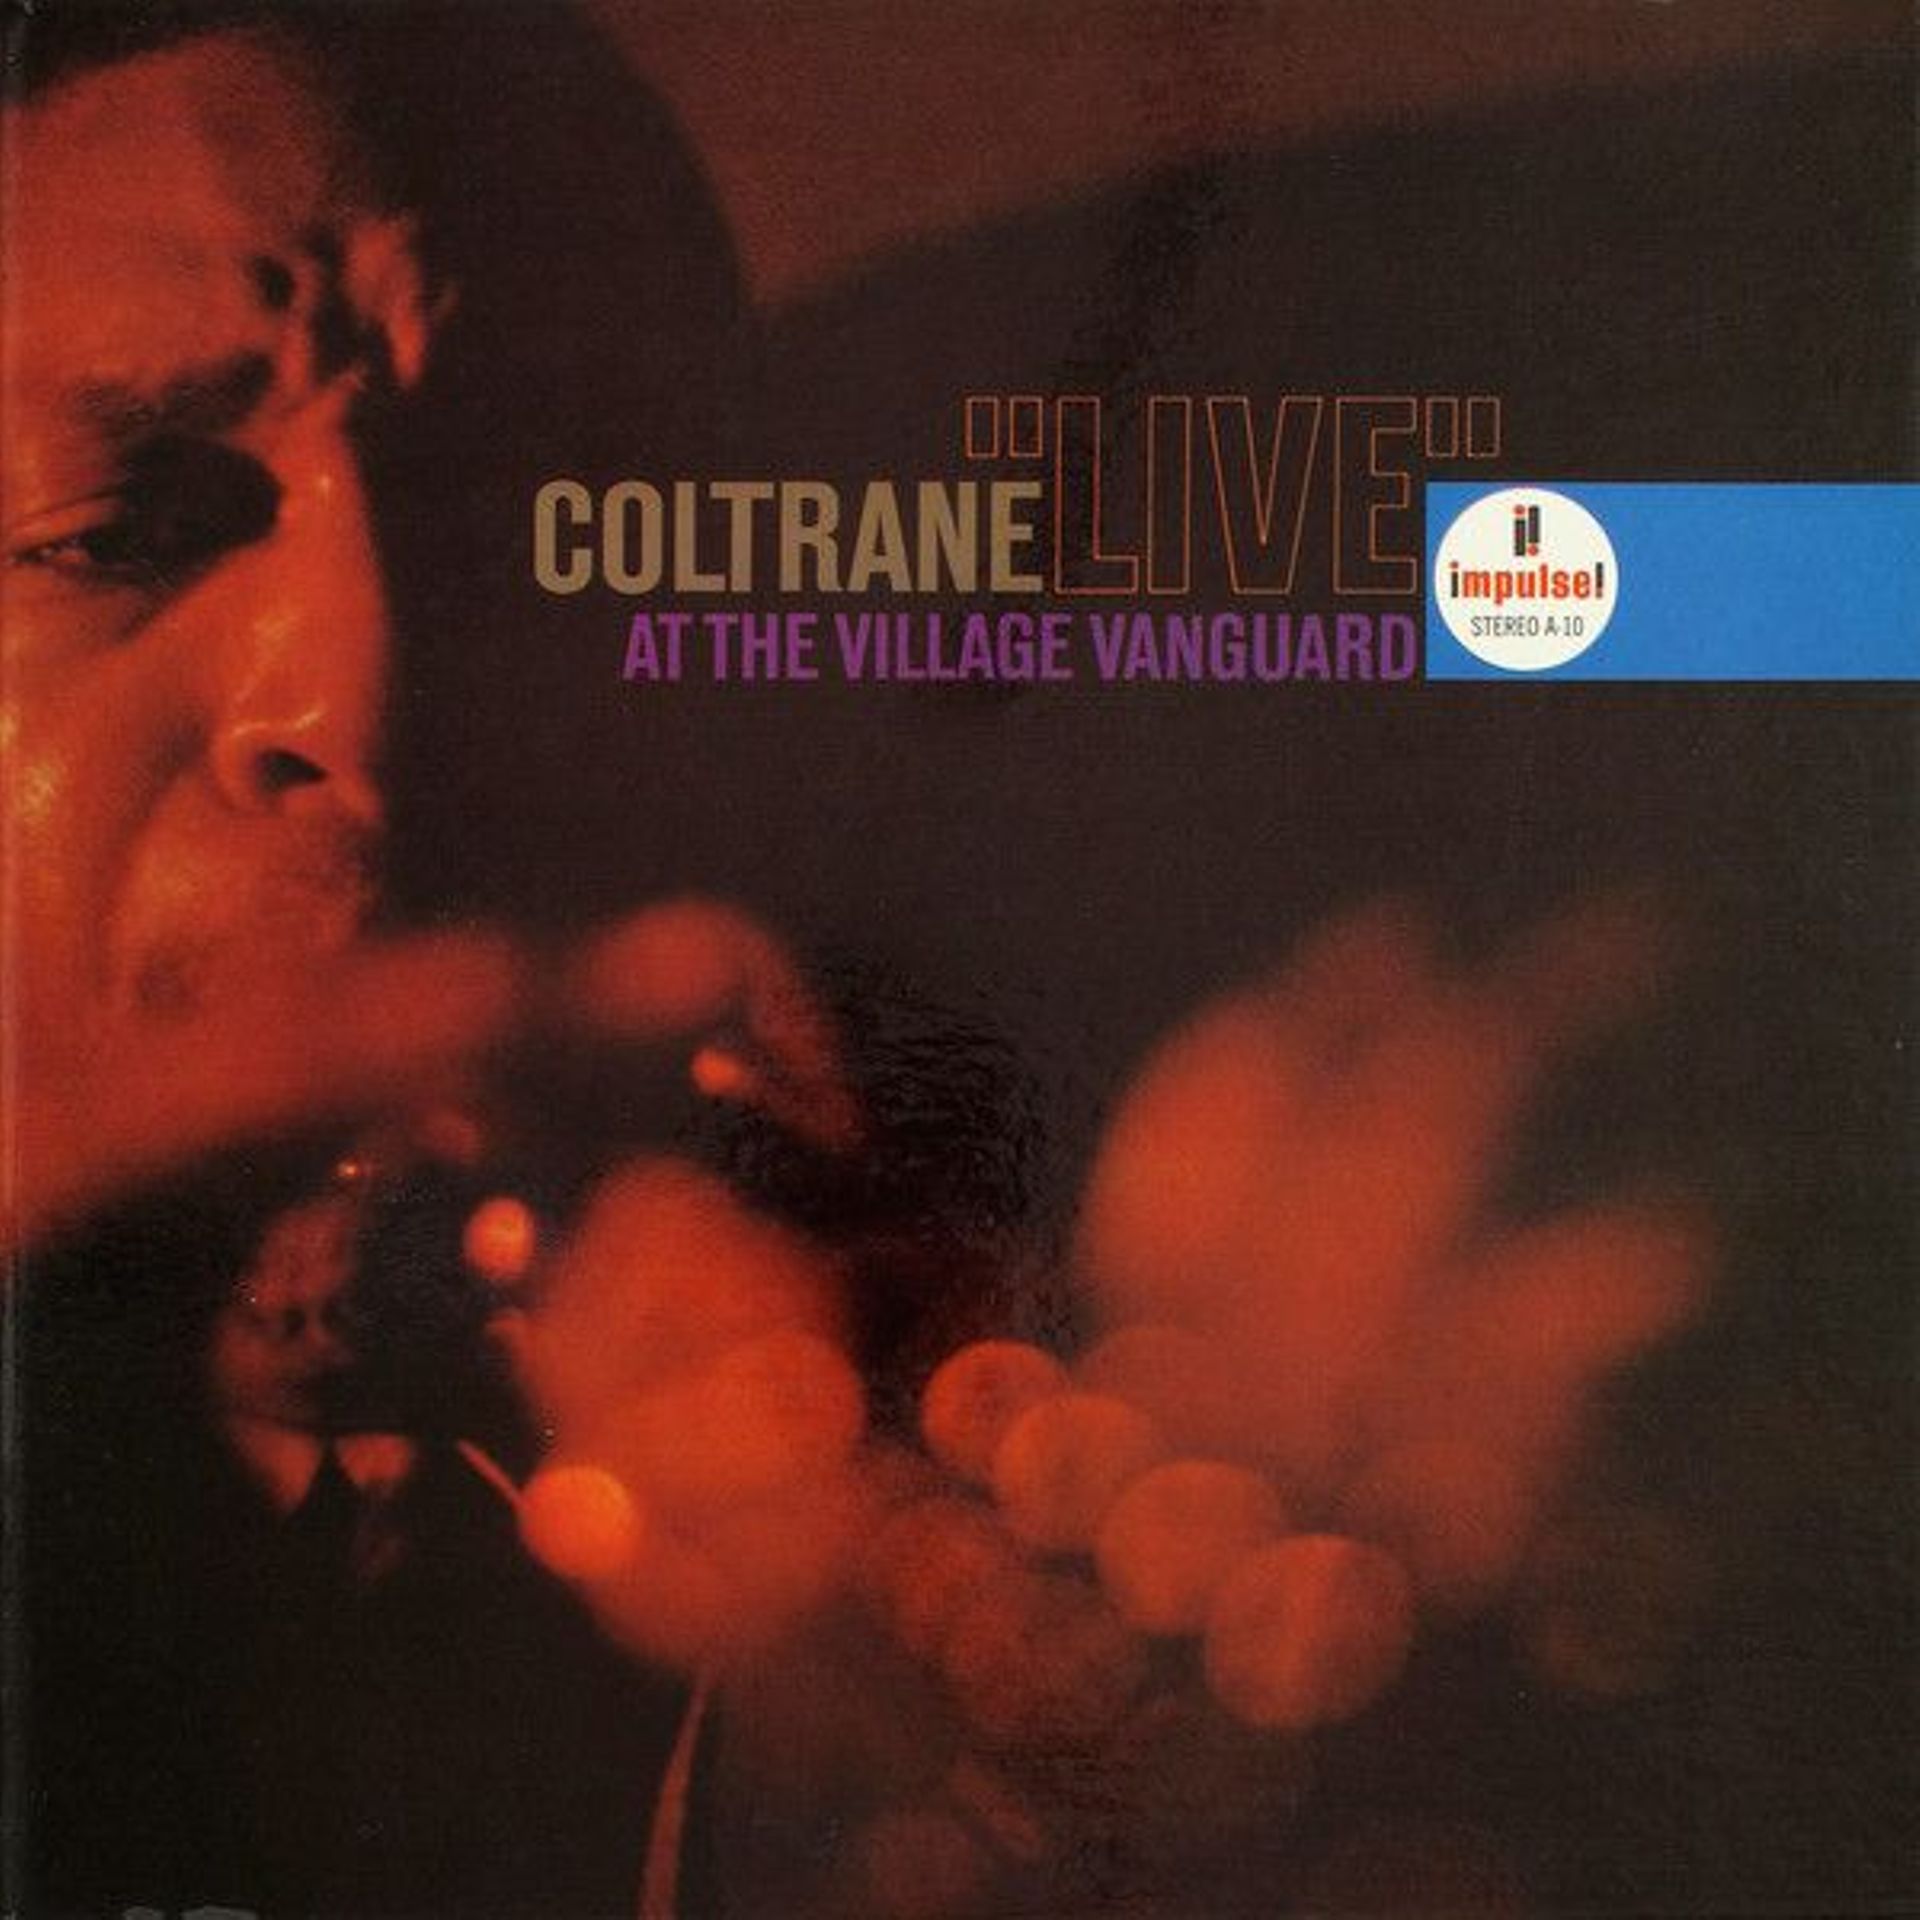 John Coltrane : "Coltrane "Live" At The Village Vanguard" (1962)